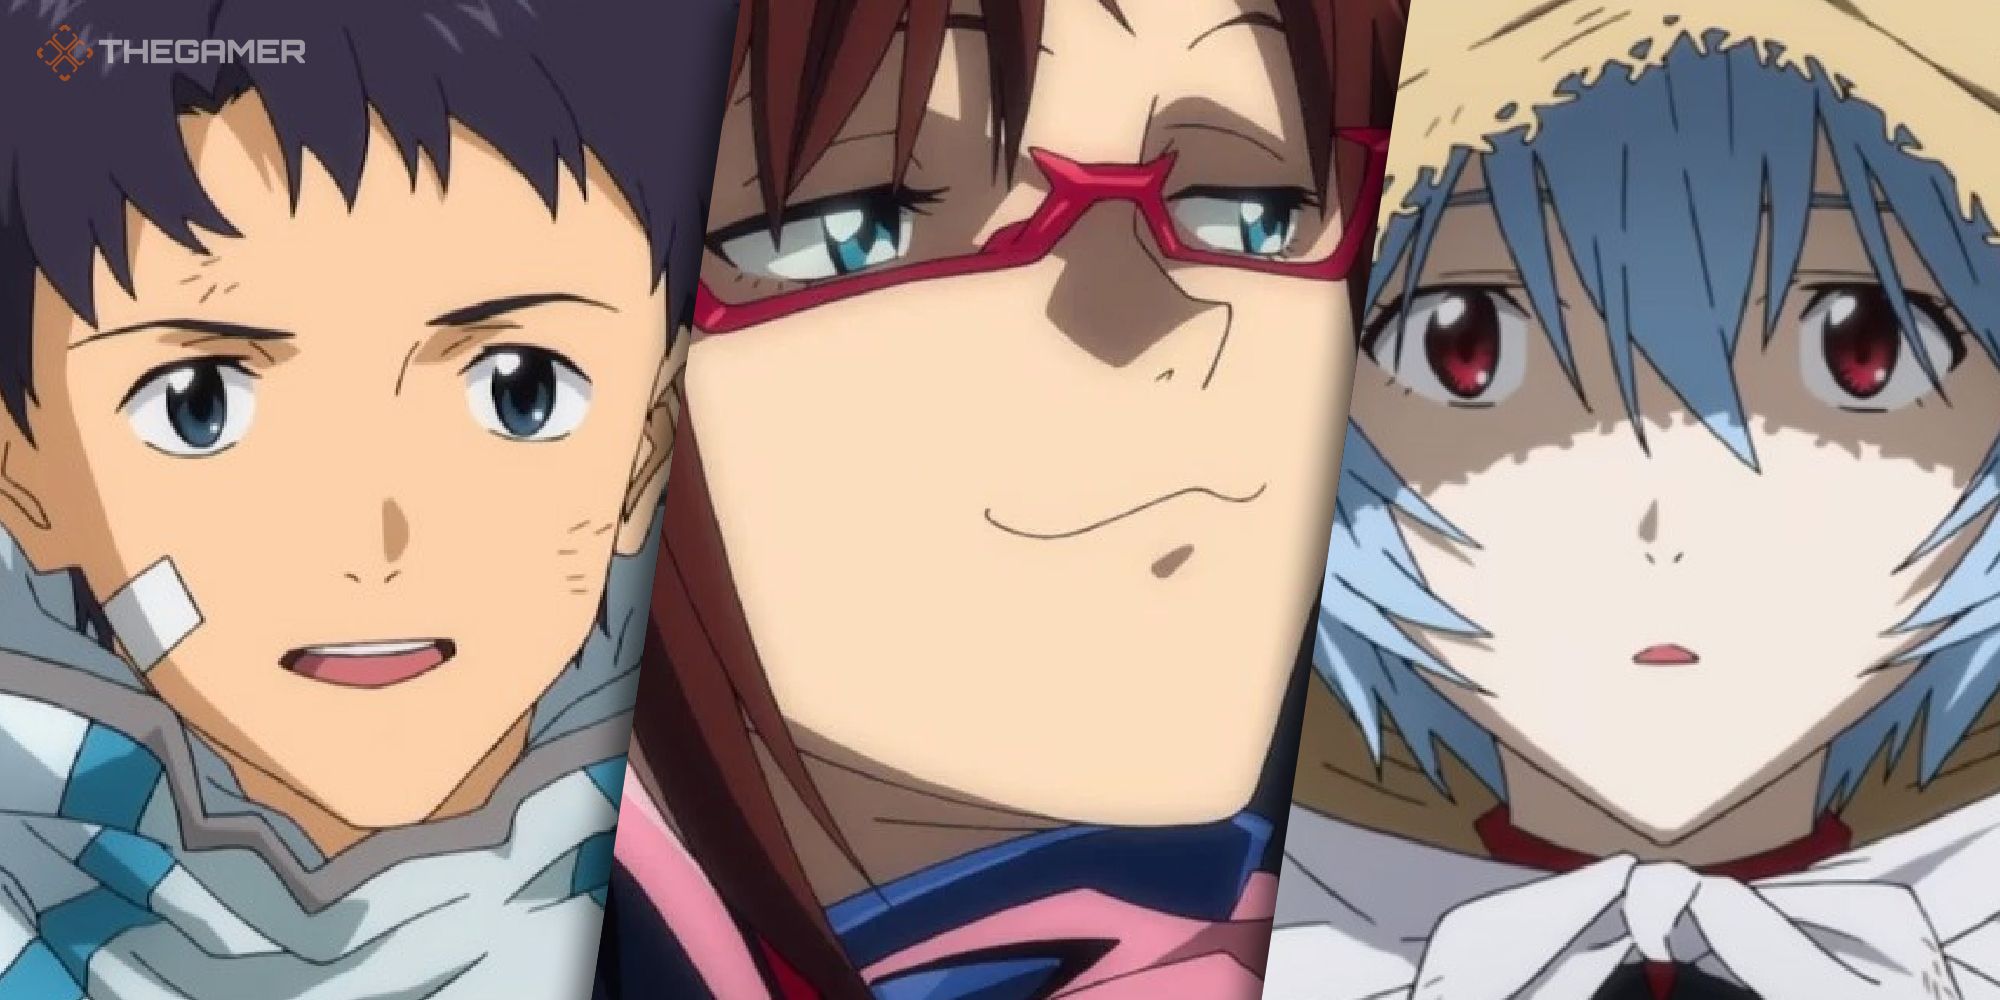 Evangelion Manga vs Anime: Which Ending Was Better? - Evangelion EXPLAINED  